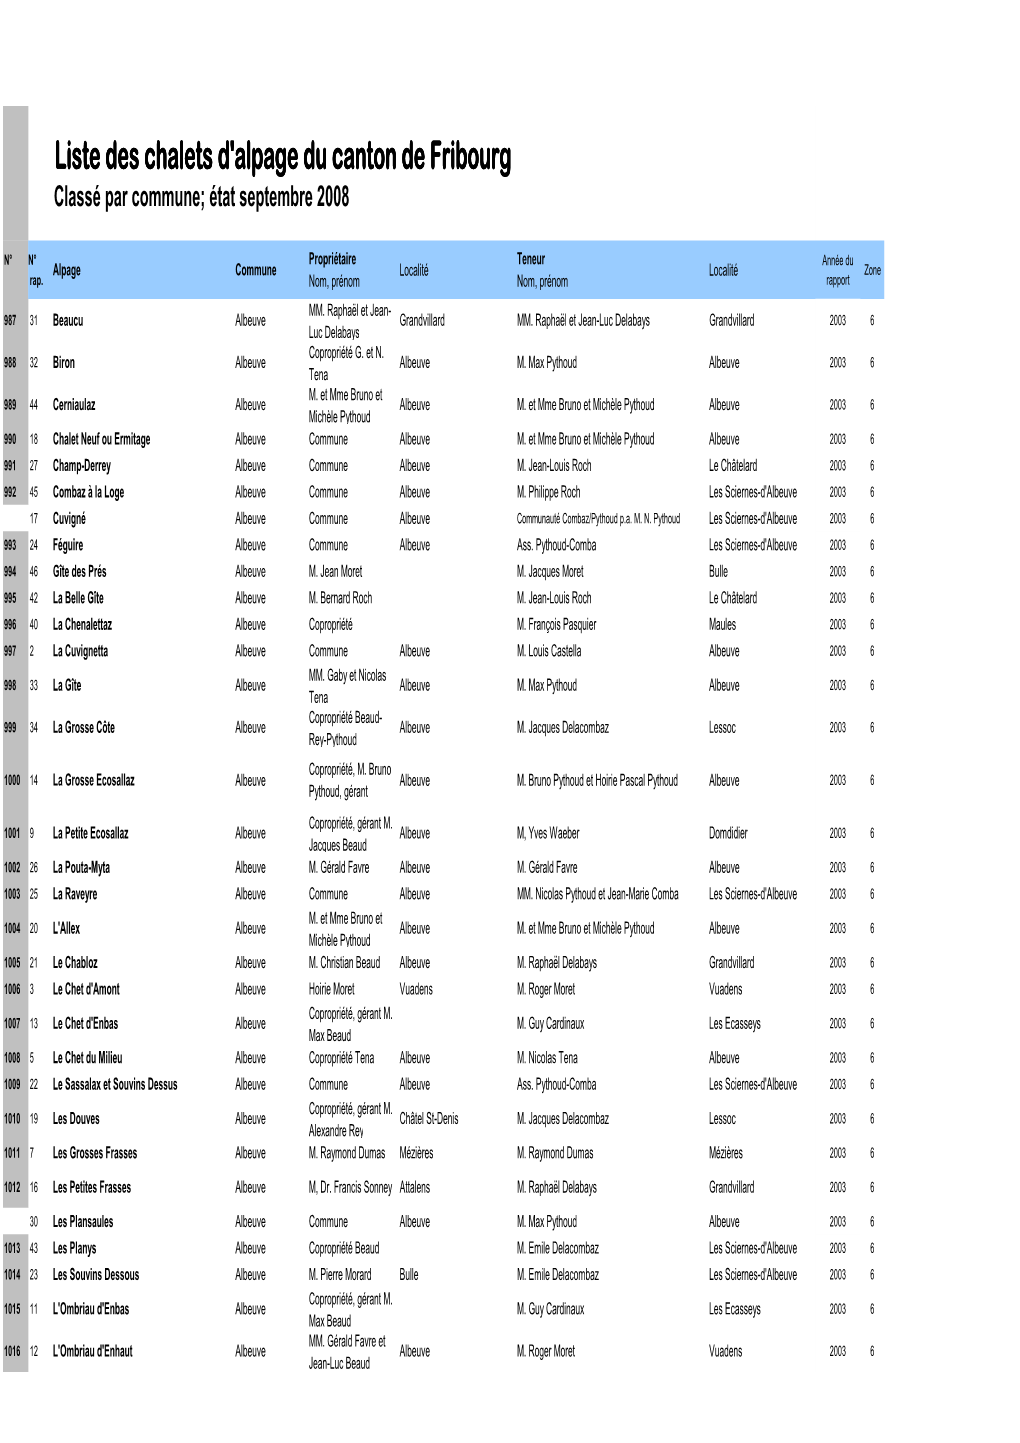 Liste Des Chalets D'alpage Fribourgeois